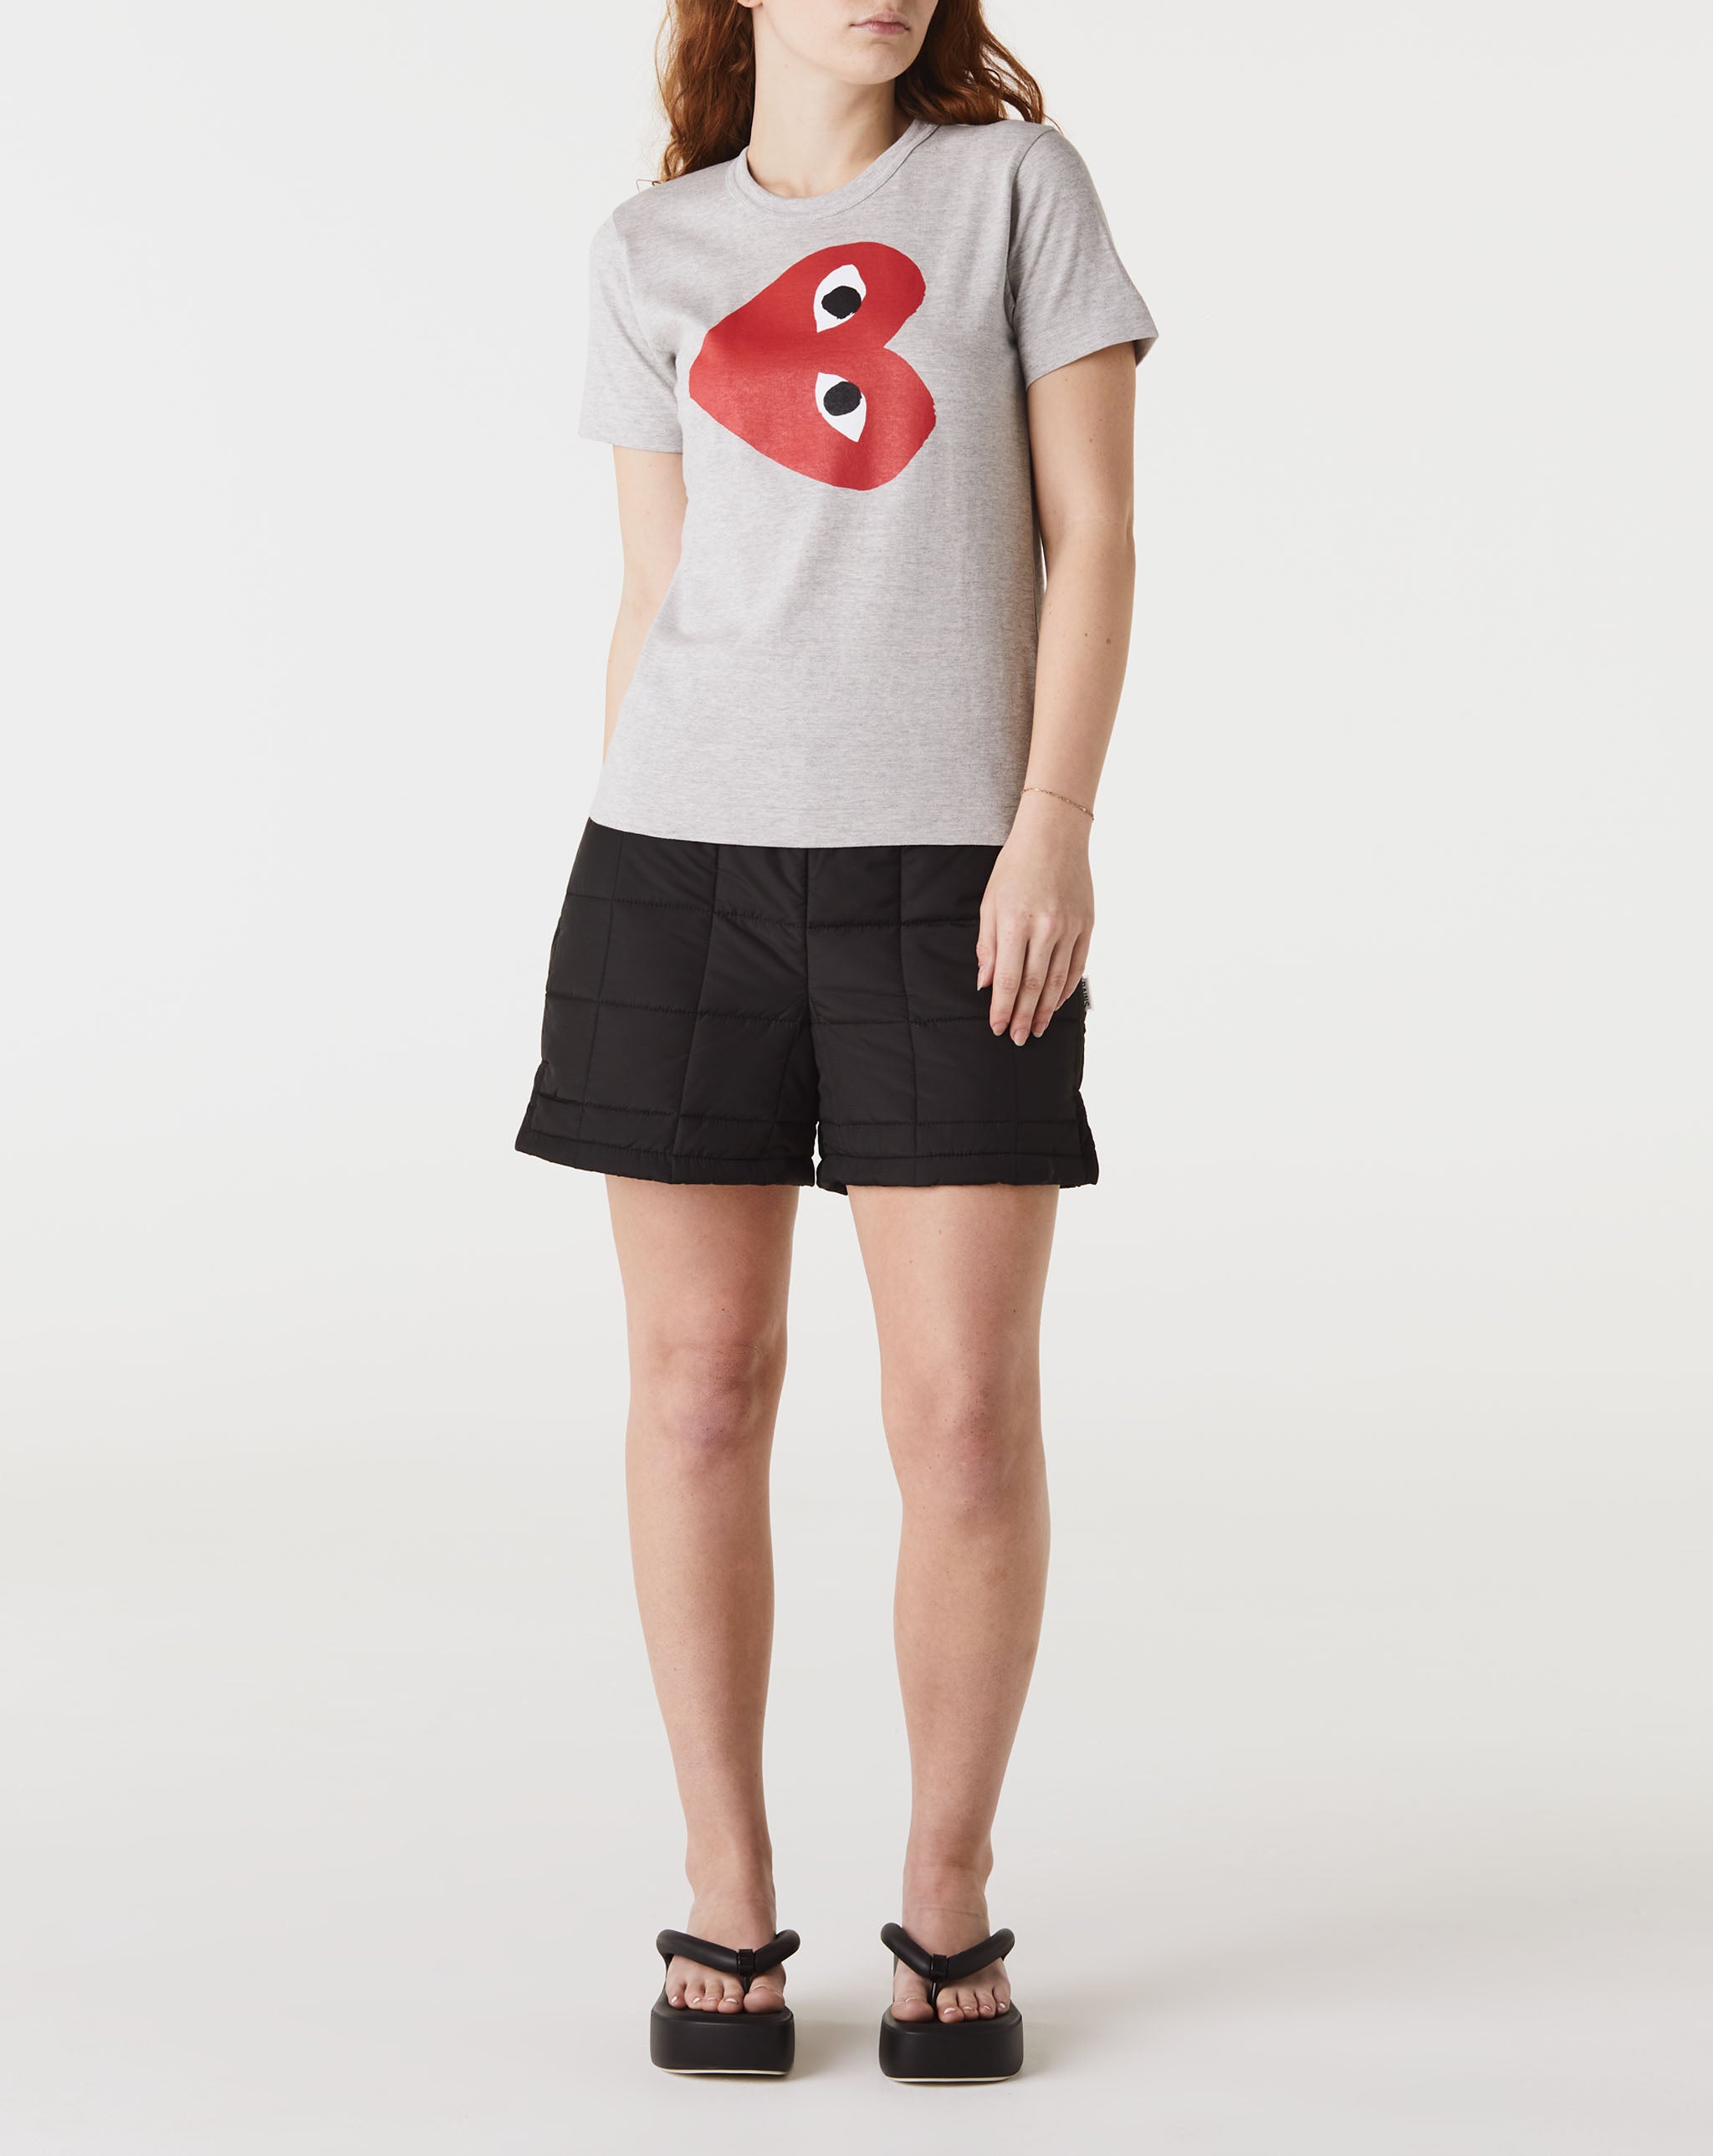 Womens Heart T-Shirt Women's Play Logo T-Shirt  - Cheap Erlebniswelt-fliegenfischen Jordan outlet